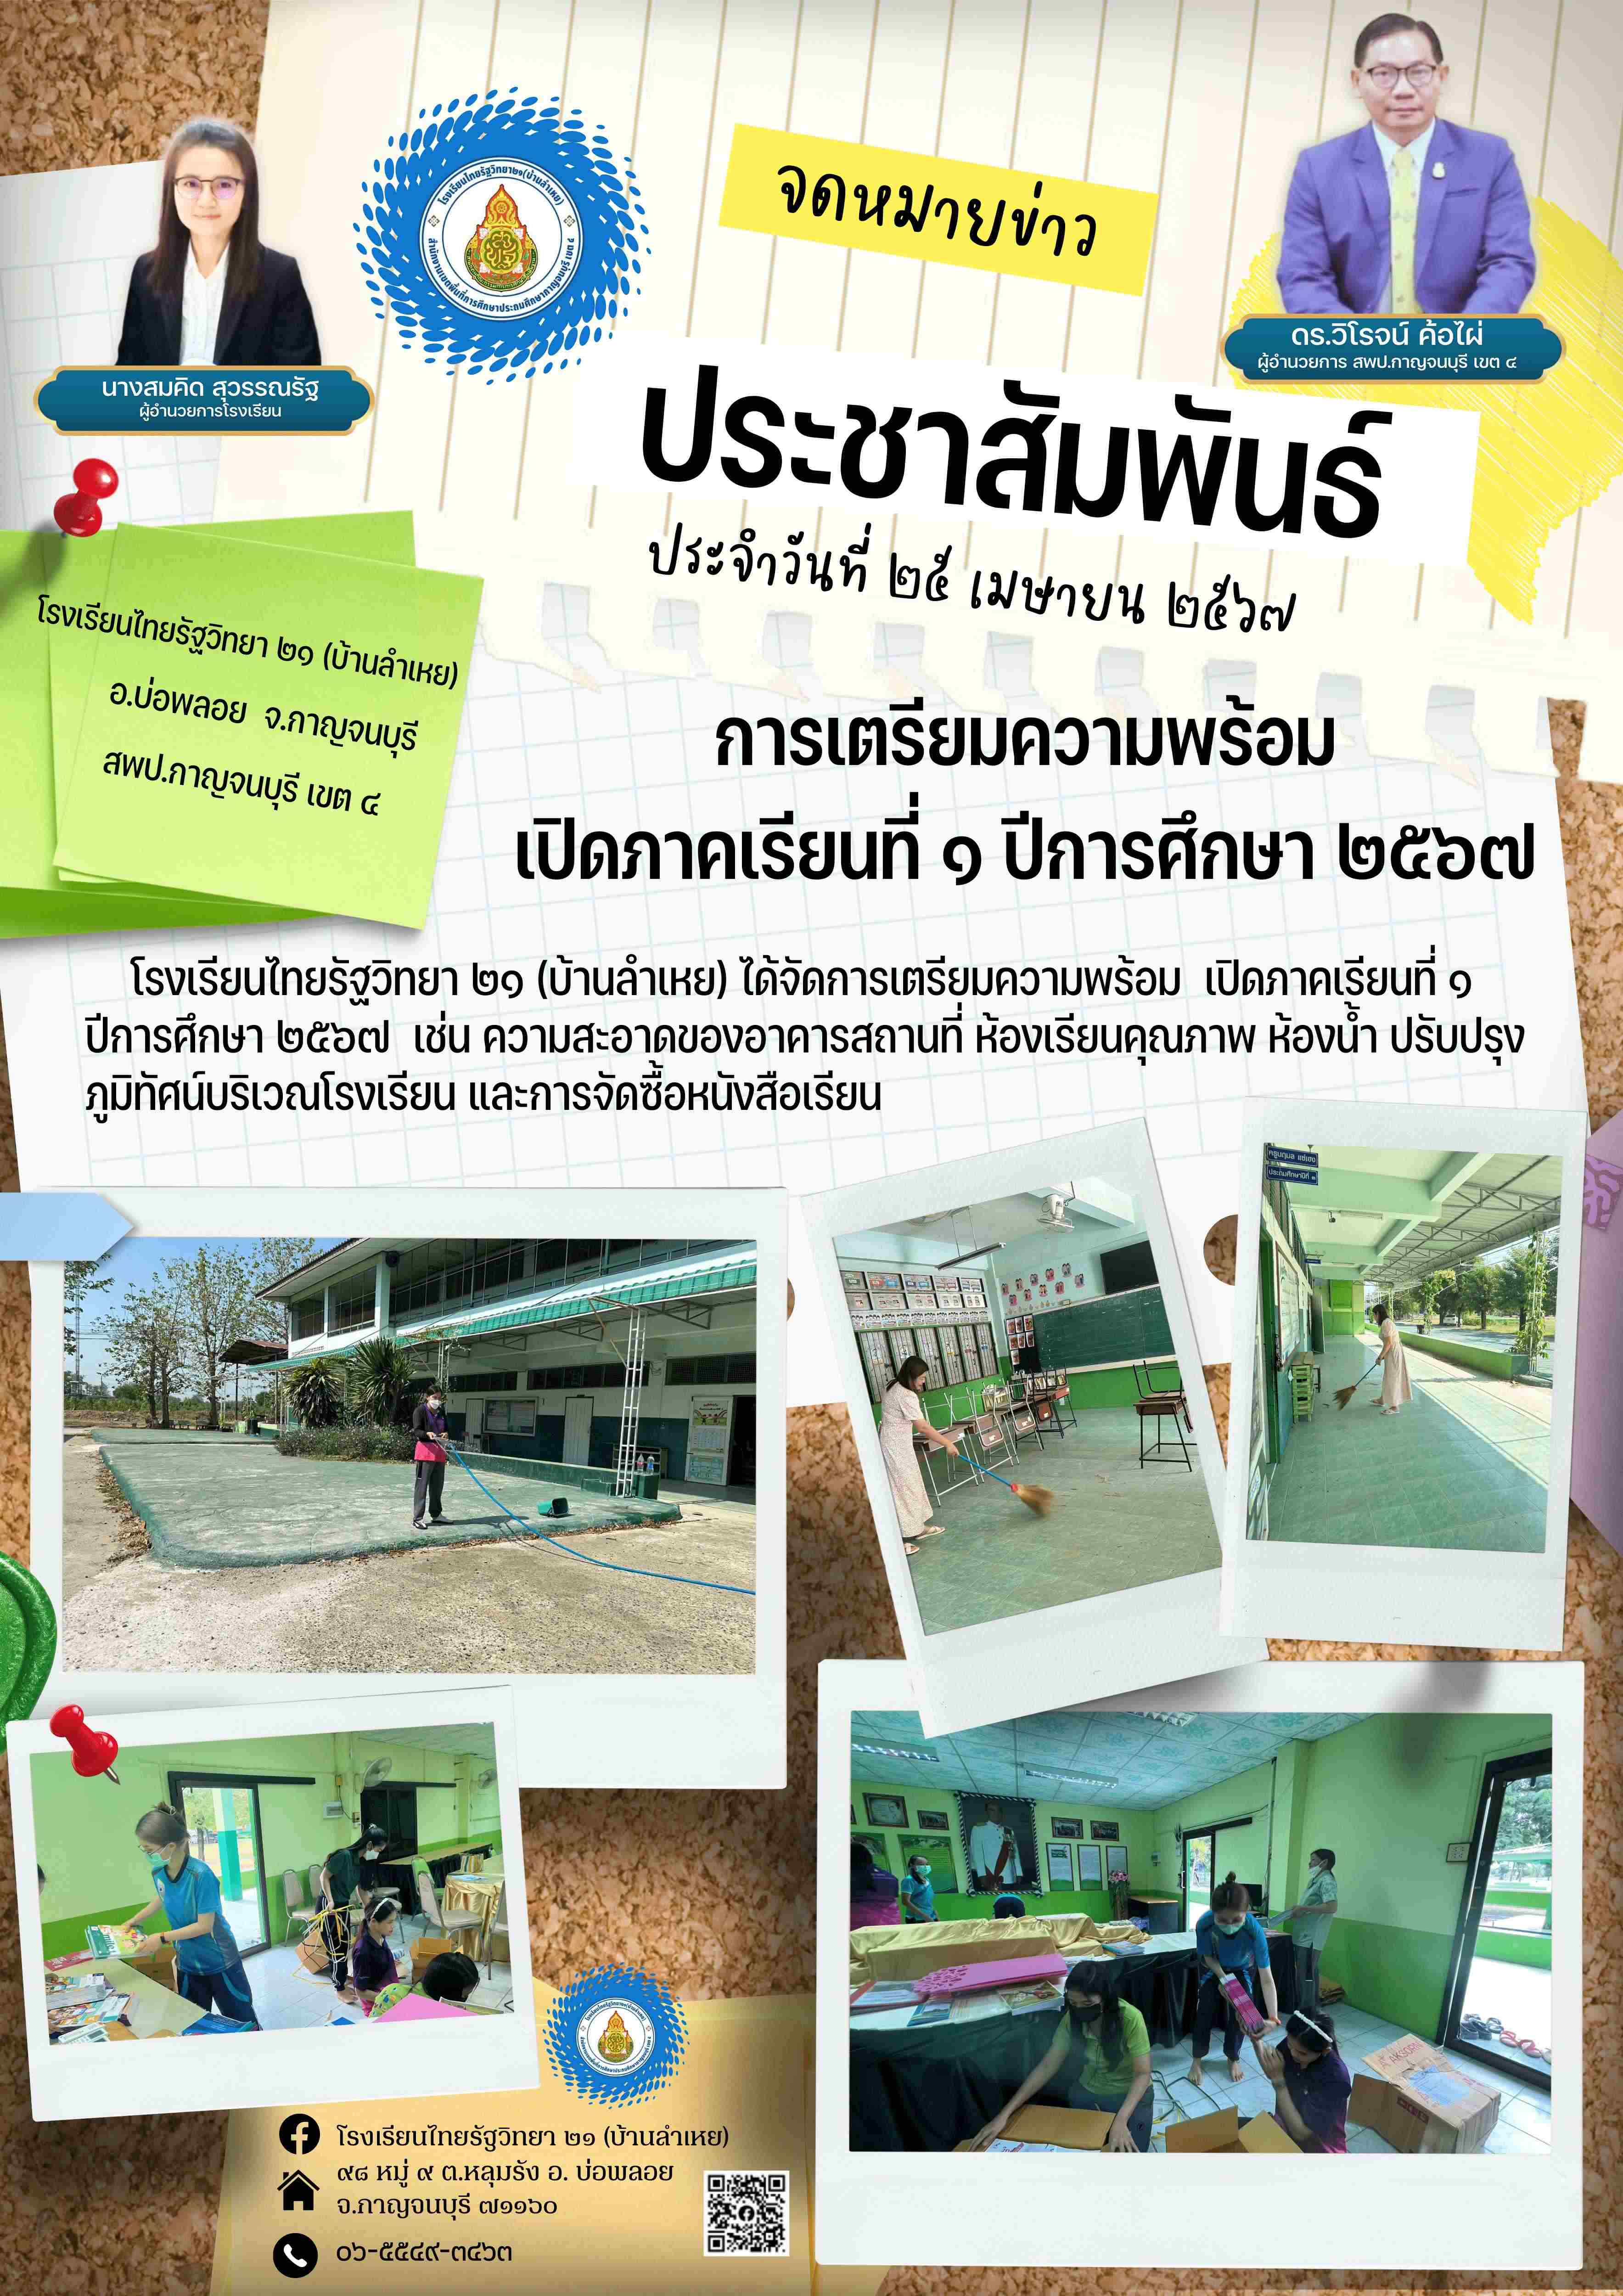 ข่าวประชาสัมพันธ์โรงเรียนไทยรัฐ 25 optimized.4.67 1